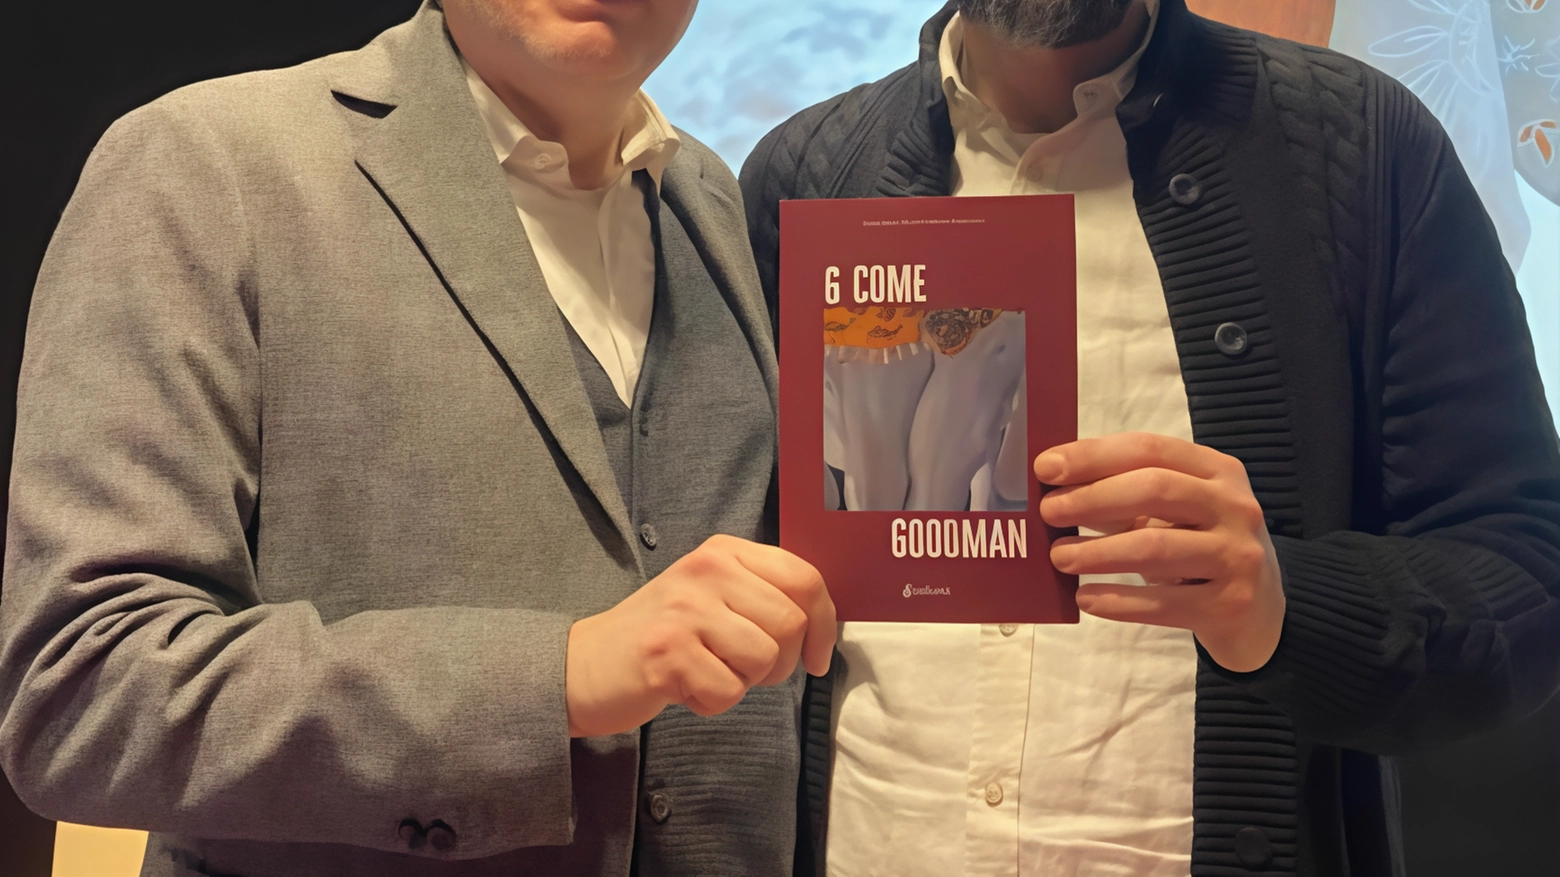 Il duo Max Milano e Antonio Montefusco presenta il romanzo 'G come Goodman', ambientato a Castel Guelfo, con una trama fantastica e attuale che esplora il divieto dell'amore e l'uso delle mascherine.